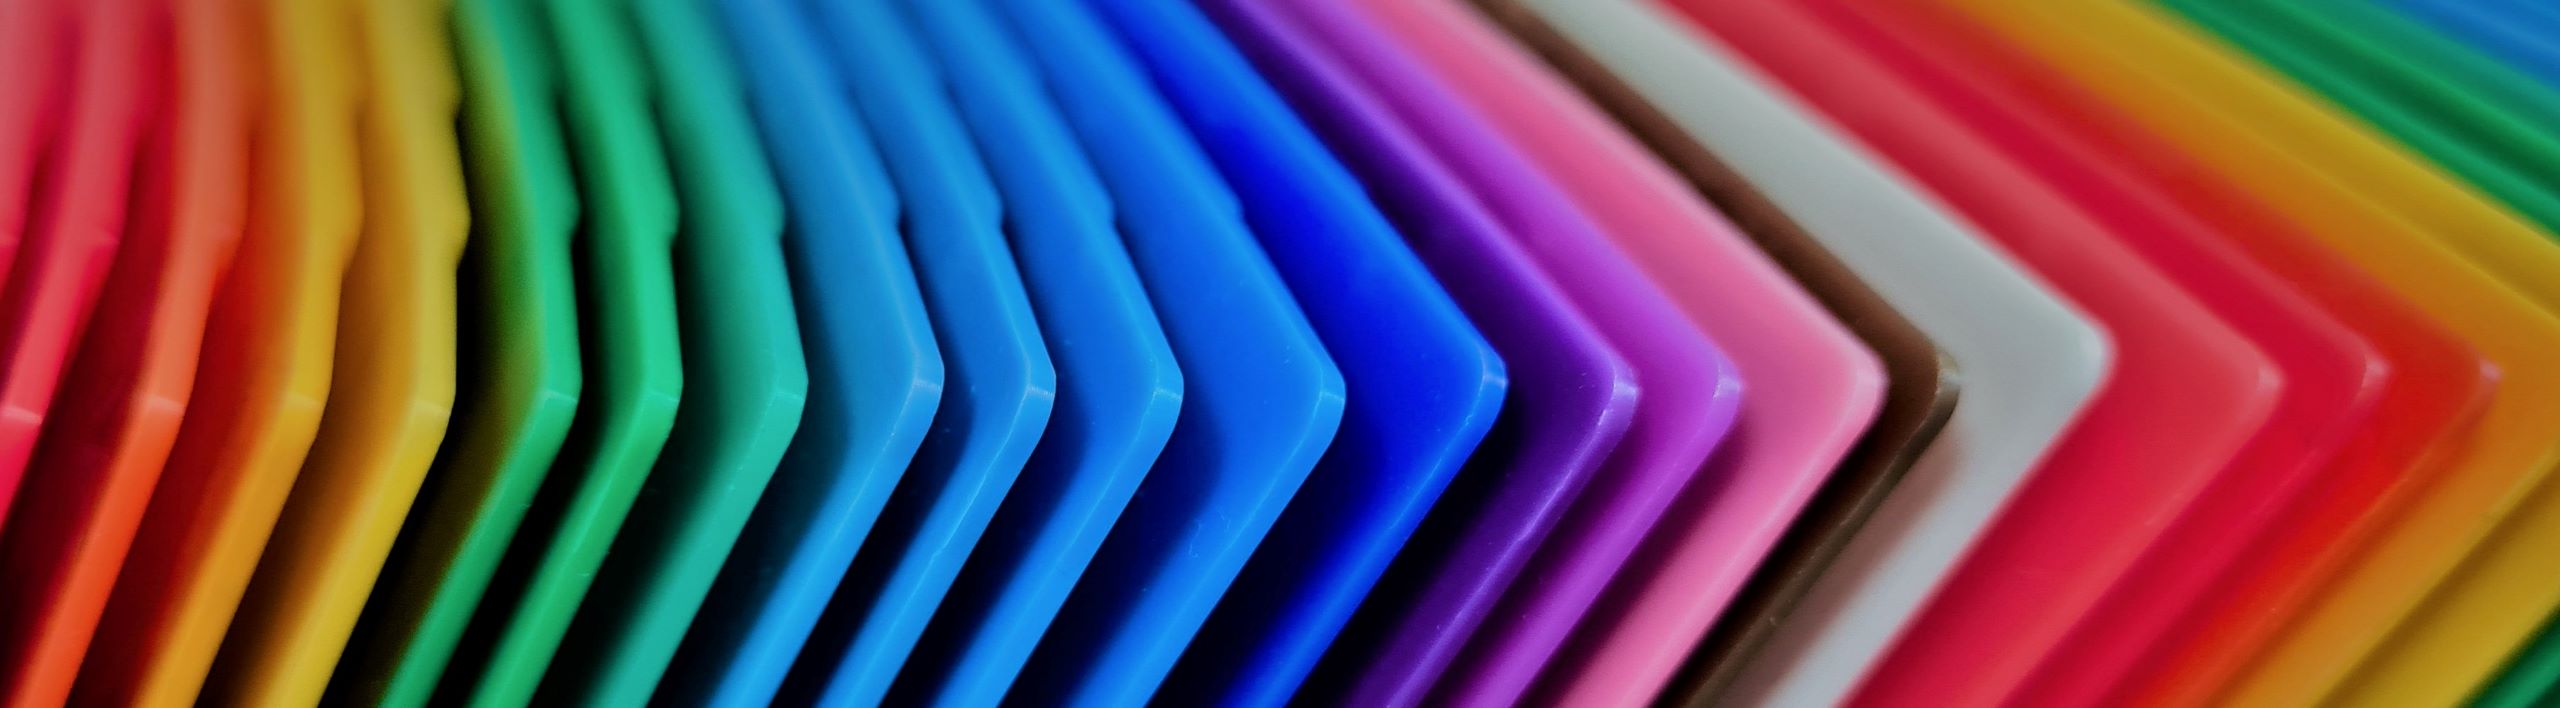 Thermoplastic Colour Masterbatch Sample Plaques Prisma Colour